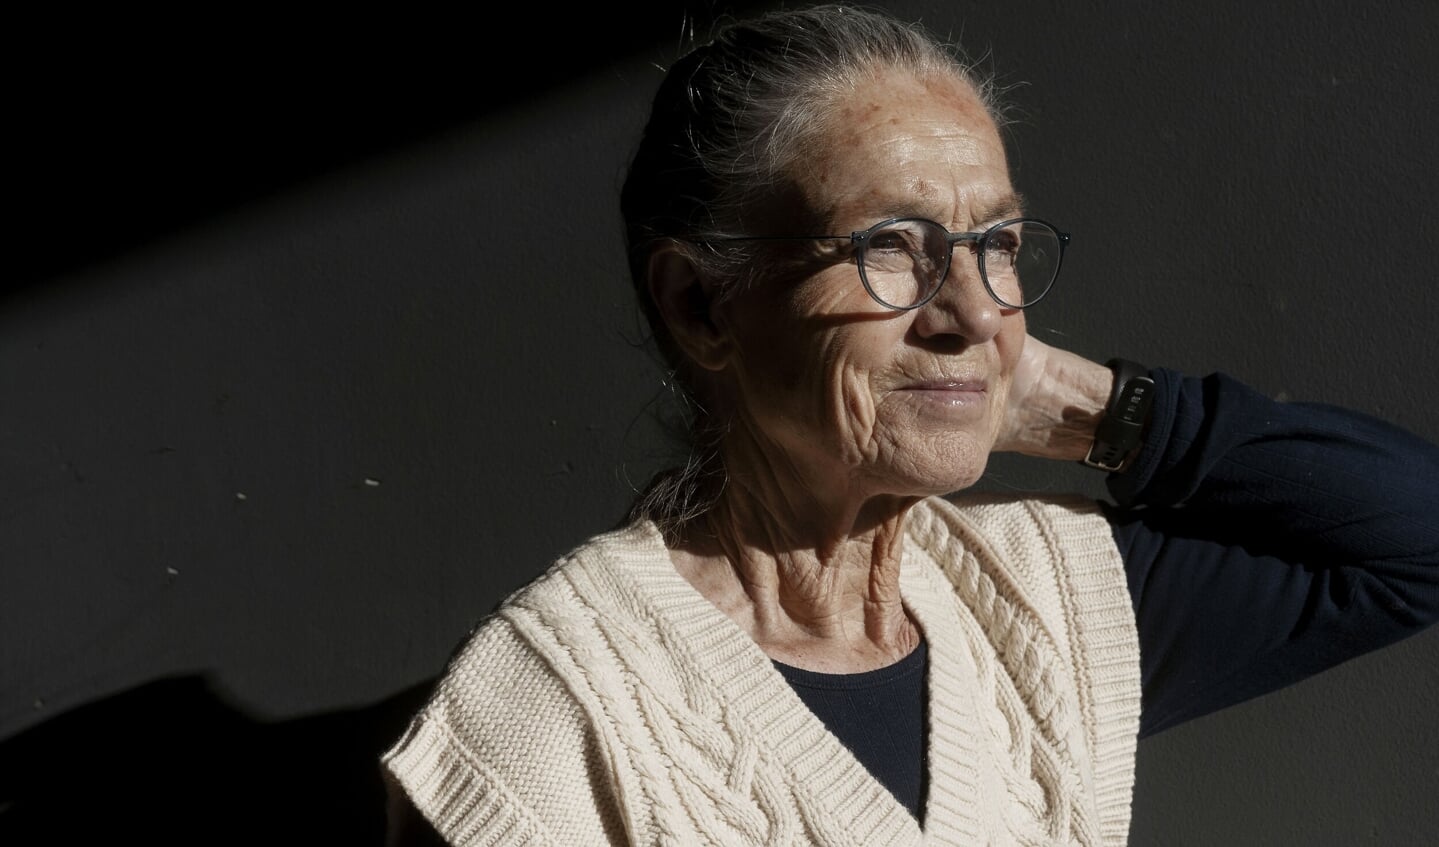 Lørdag sov Ritt Bjerregaard ind i sit hjem på Østerbro i København. Hun blev 81 år efter at have kæmpet mod en kræftsygdom siden 2015. (Arkivfoto).